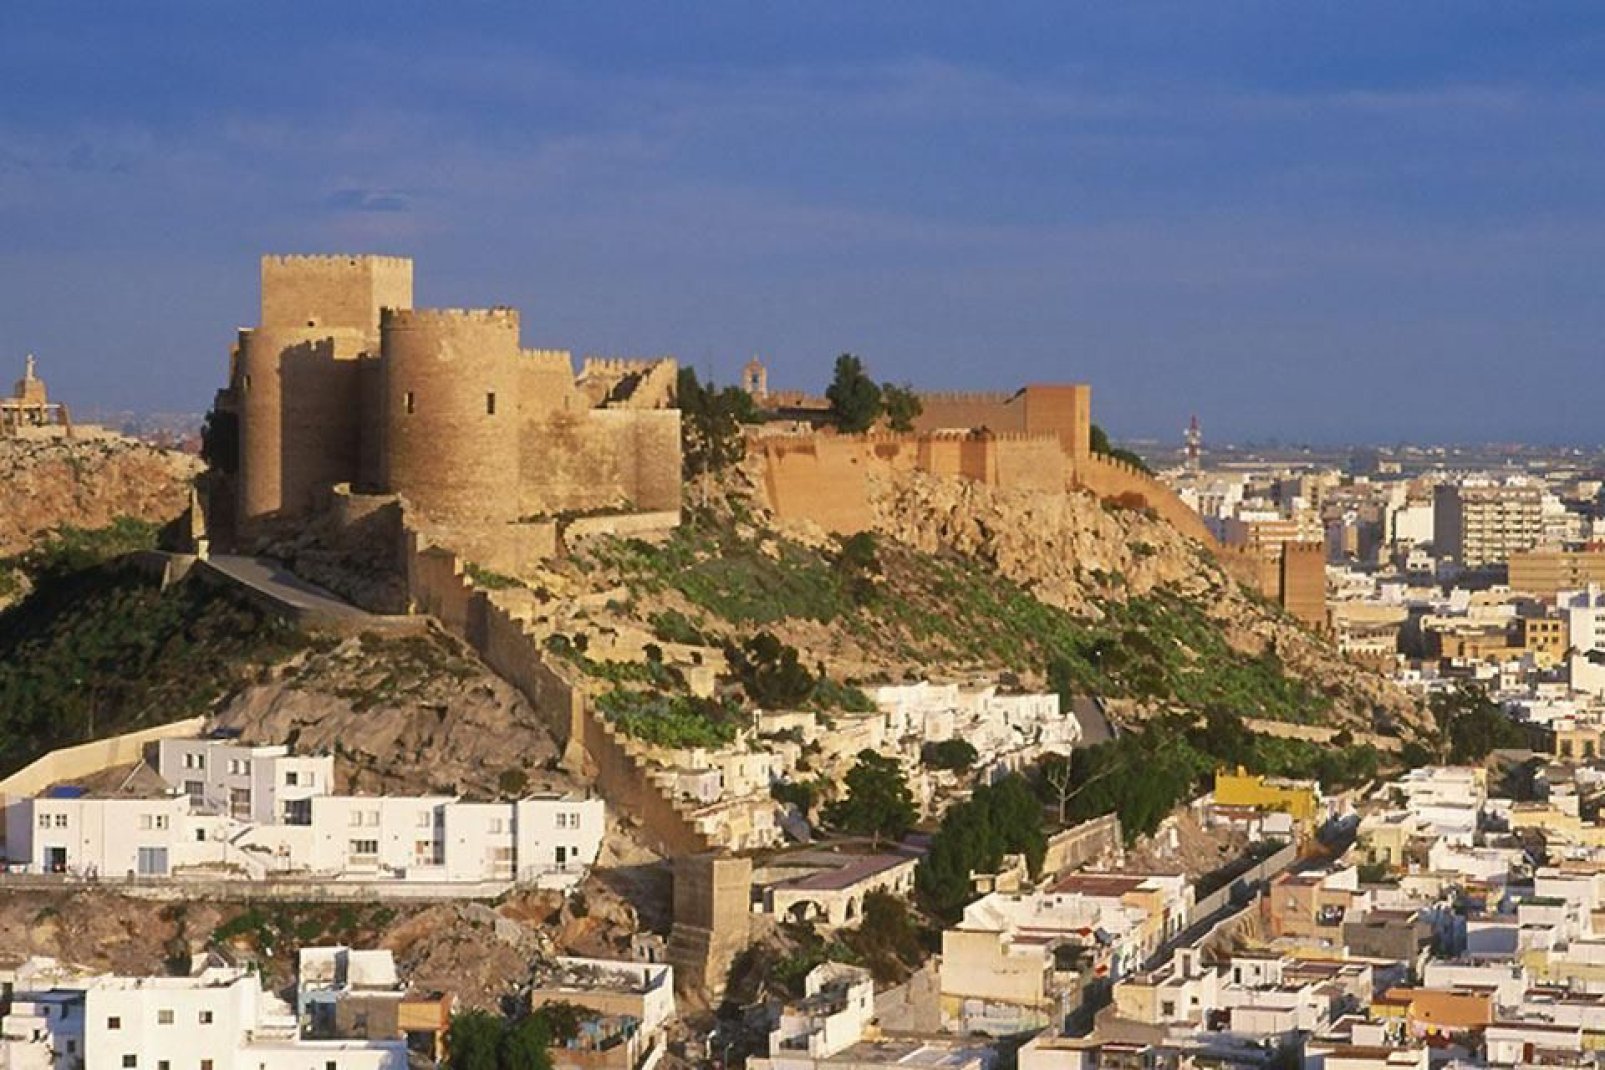 Cette forteresse datant du XIIIème siècle est la plus grande d'Andalousie. Ses imposantes murailles et ses magnifiques jardins valent le détour.